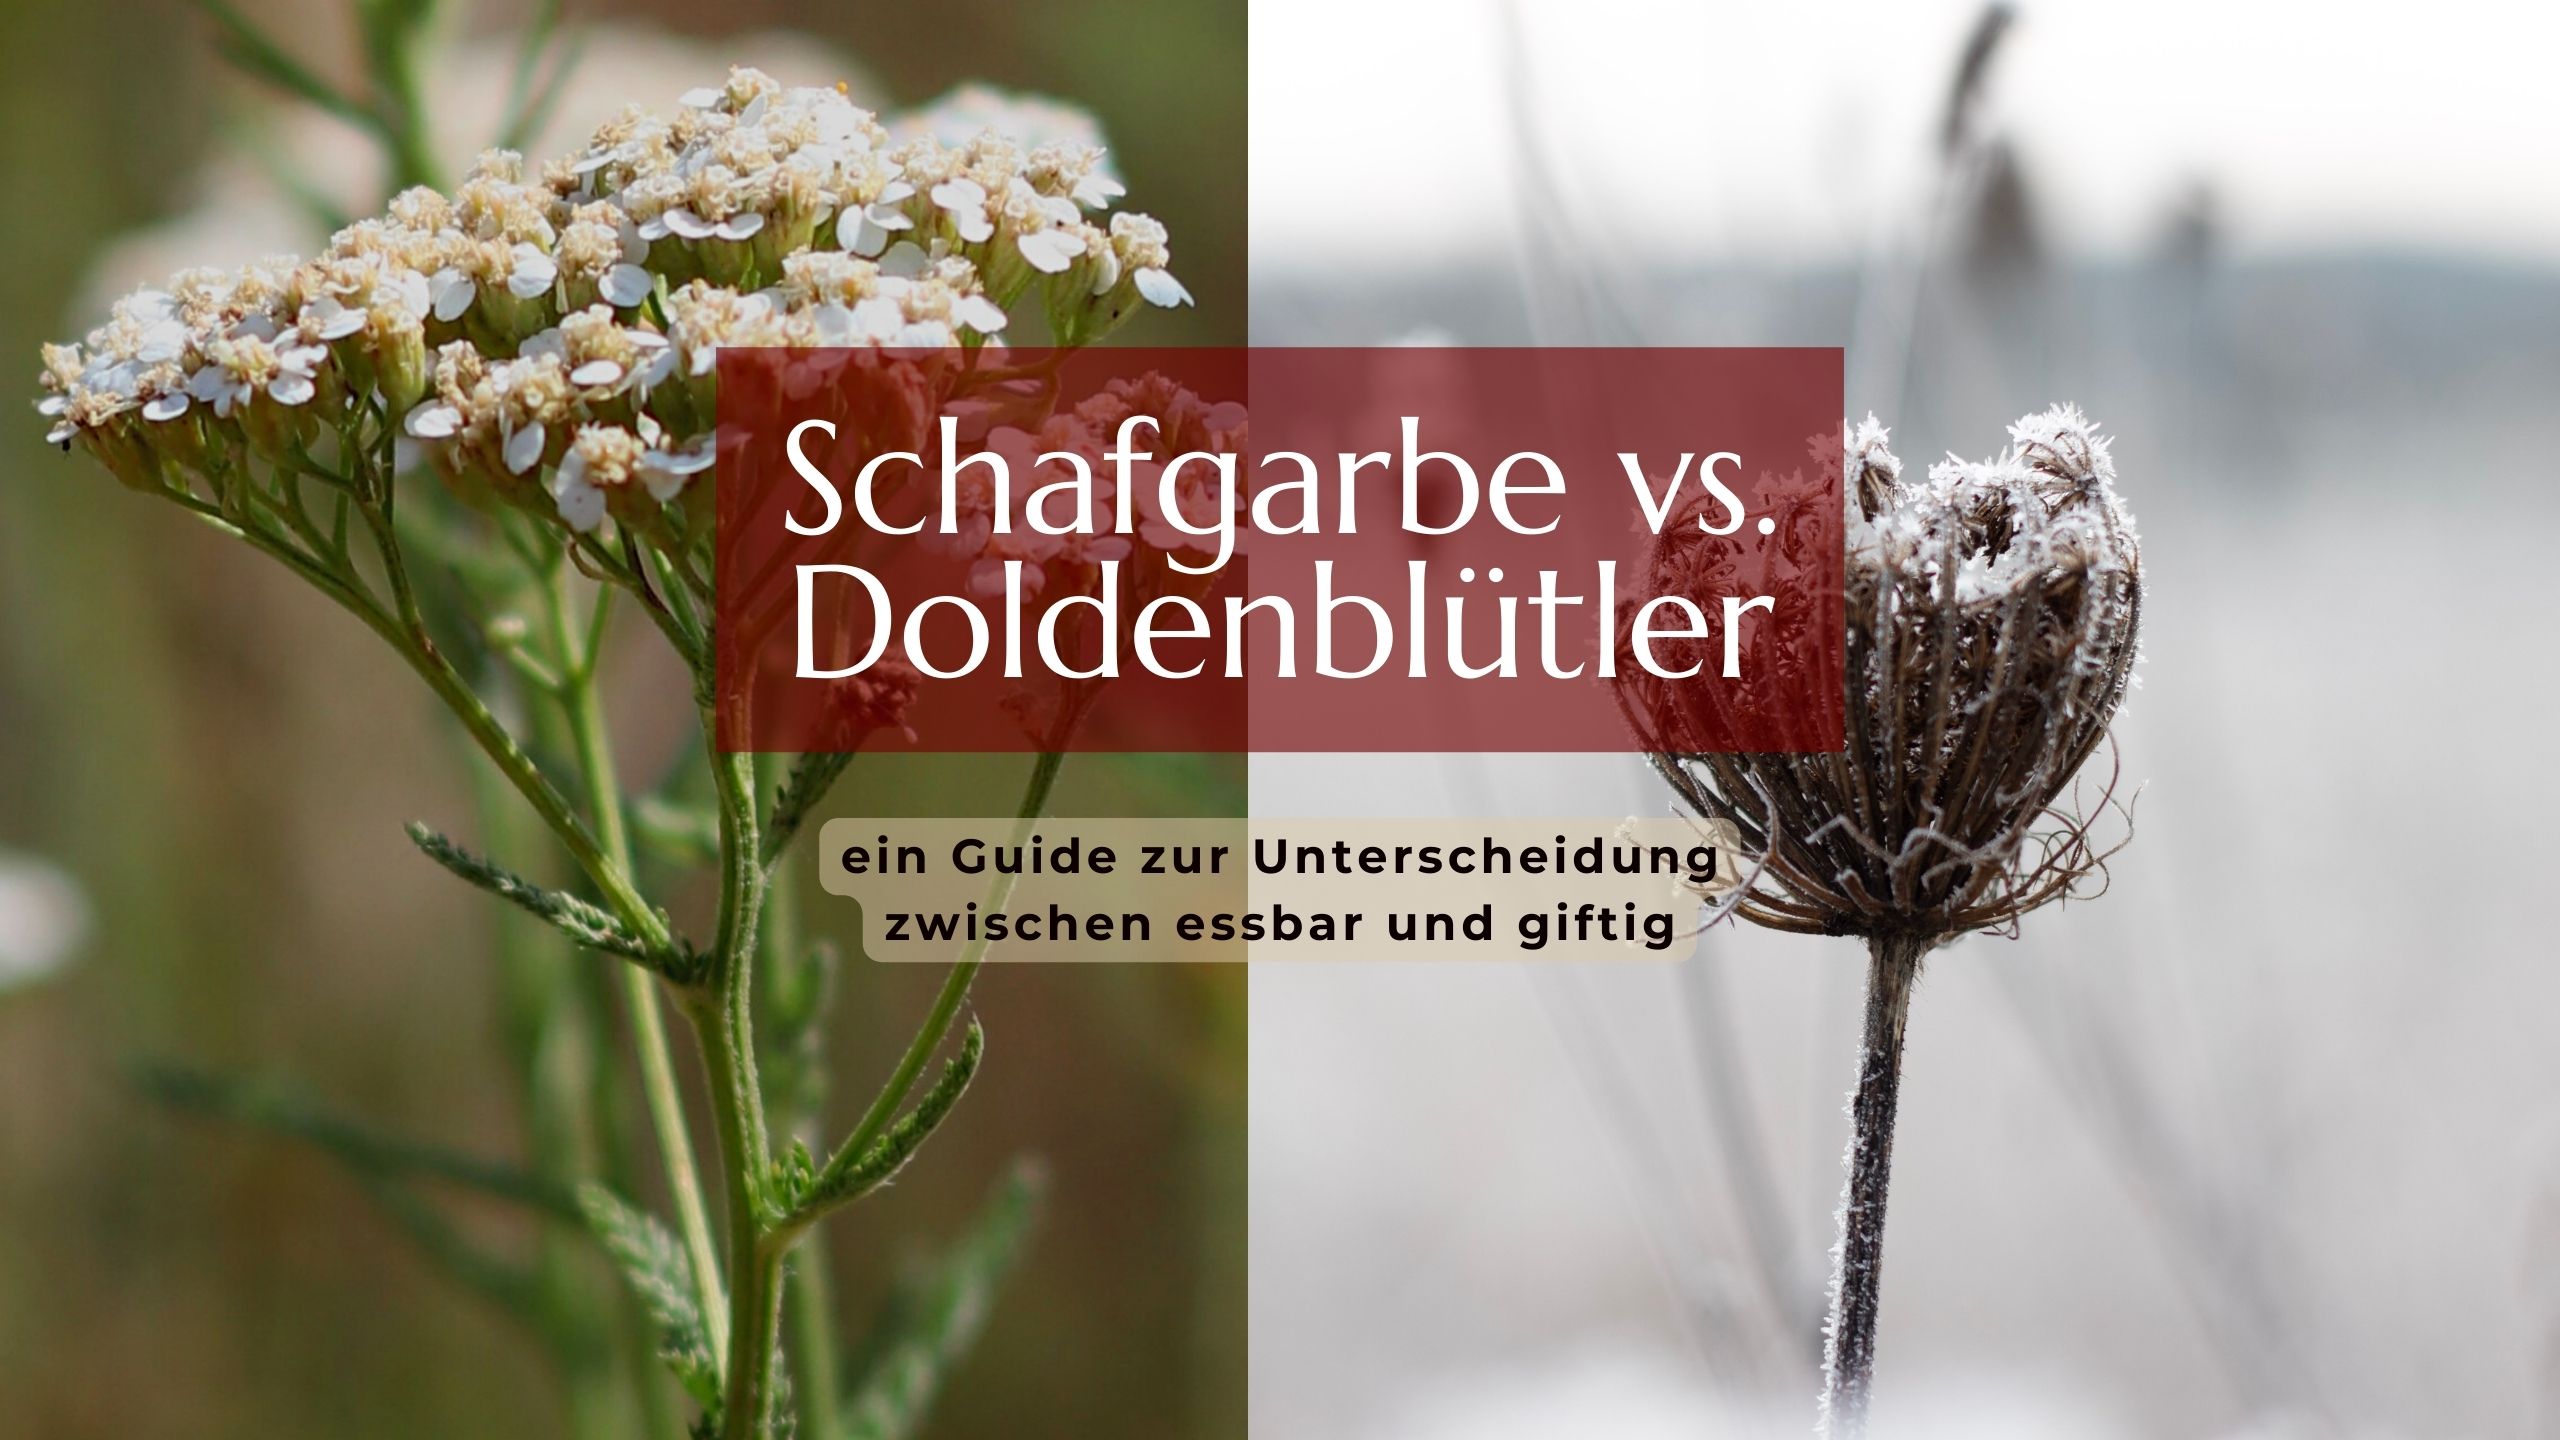 Schafgarbe vs Doldenblütler: ein Guide zur Unterscheidung zwischen essbar und giftig